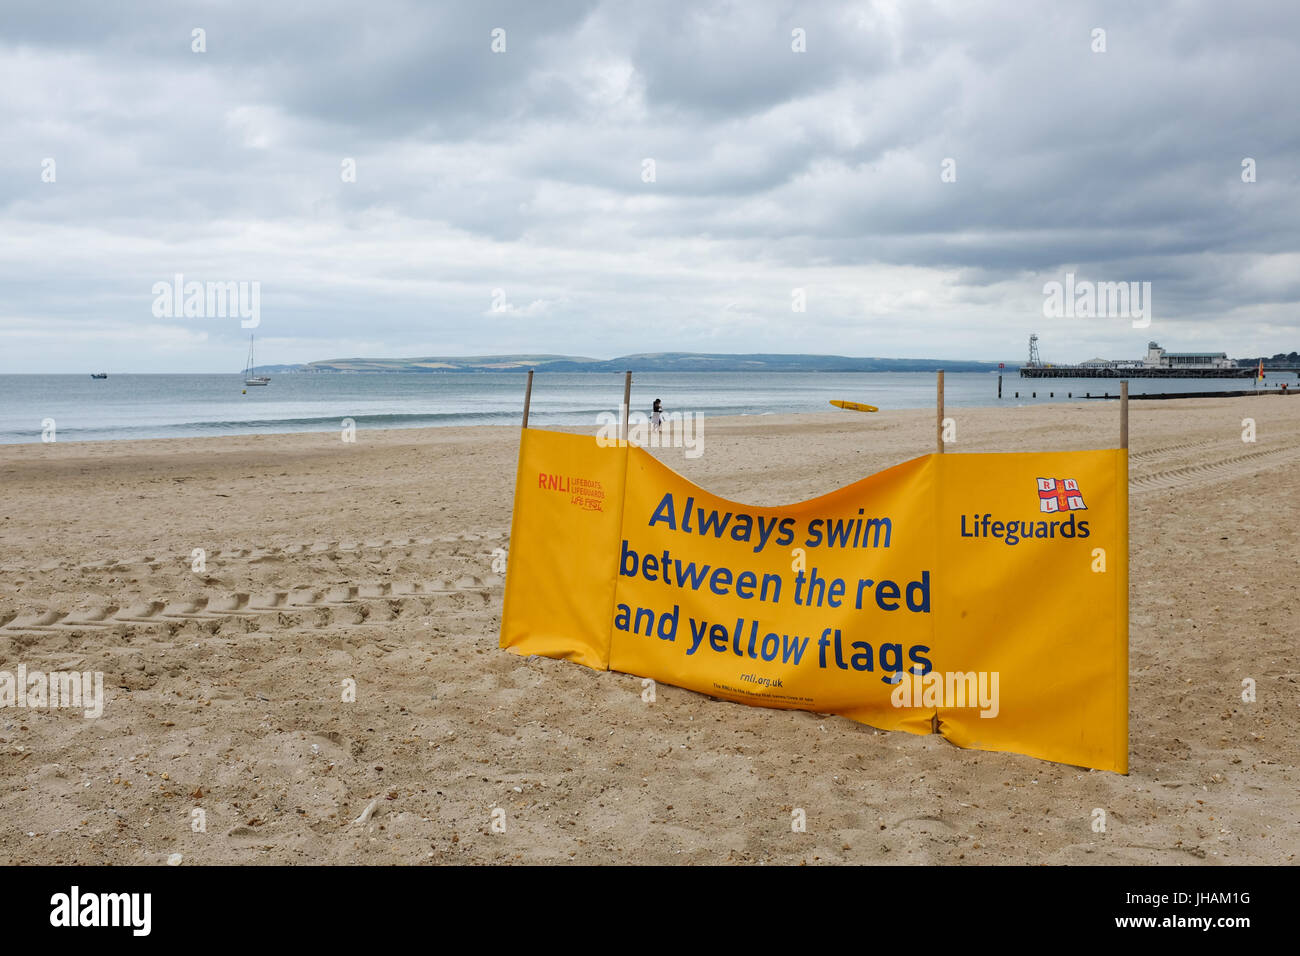 Un avviso di sicurezza per i bagnanti sulla spiaggia di Bournemouth in Dorest, Inghilterra. Foto Stock